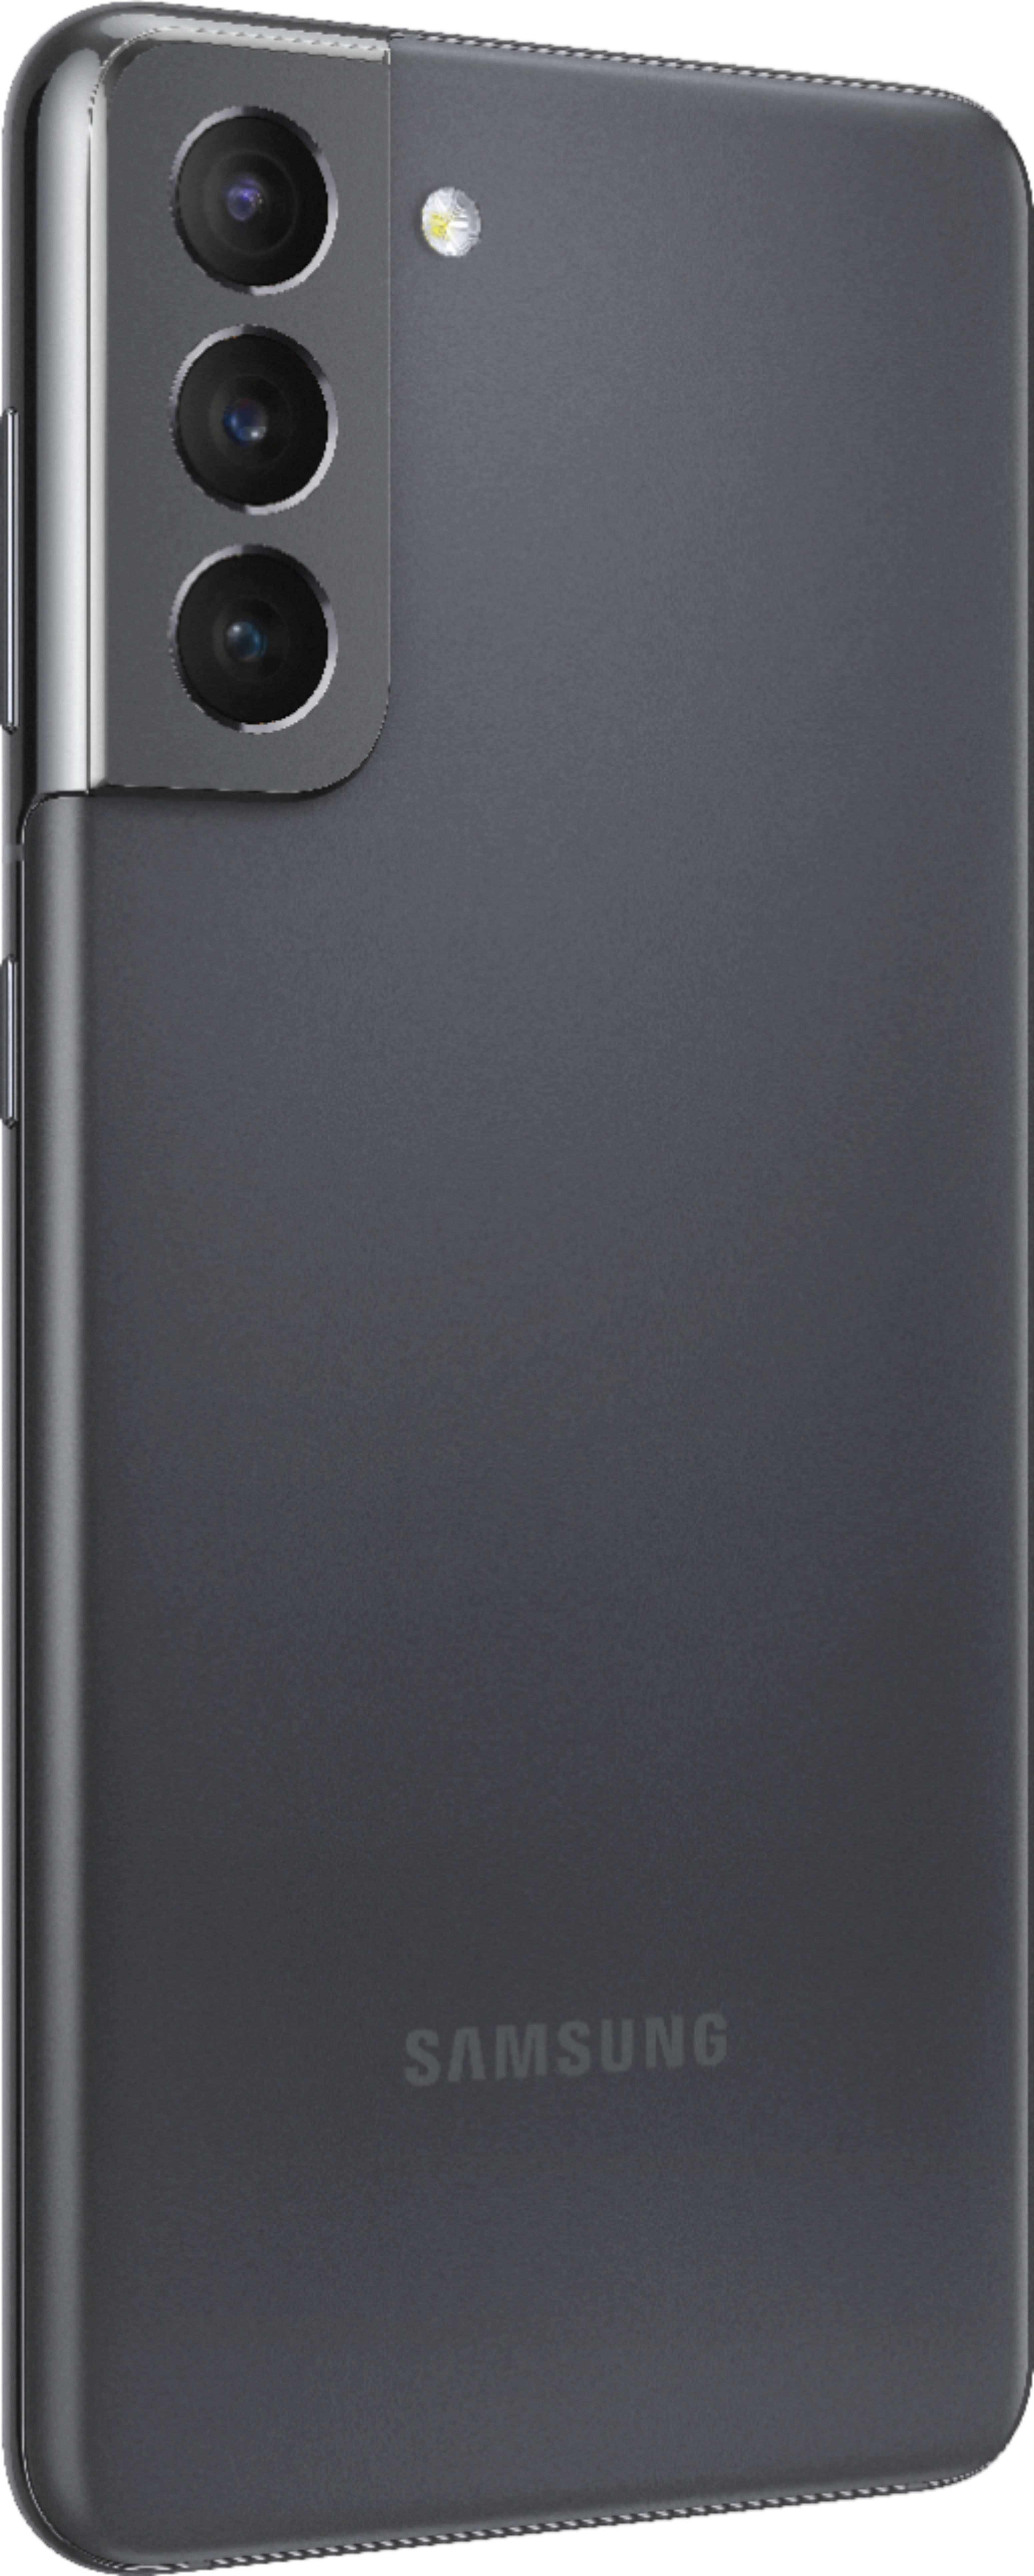 41％割引ブラック系【楽天最安値に挑戦】 Samsung Galaxy S21 5G Phantom gray スマートフォン本体 家電・スマホ・カメラブラック系-WWW.DEKORBLOG.NET